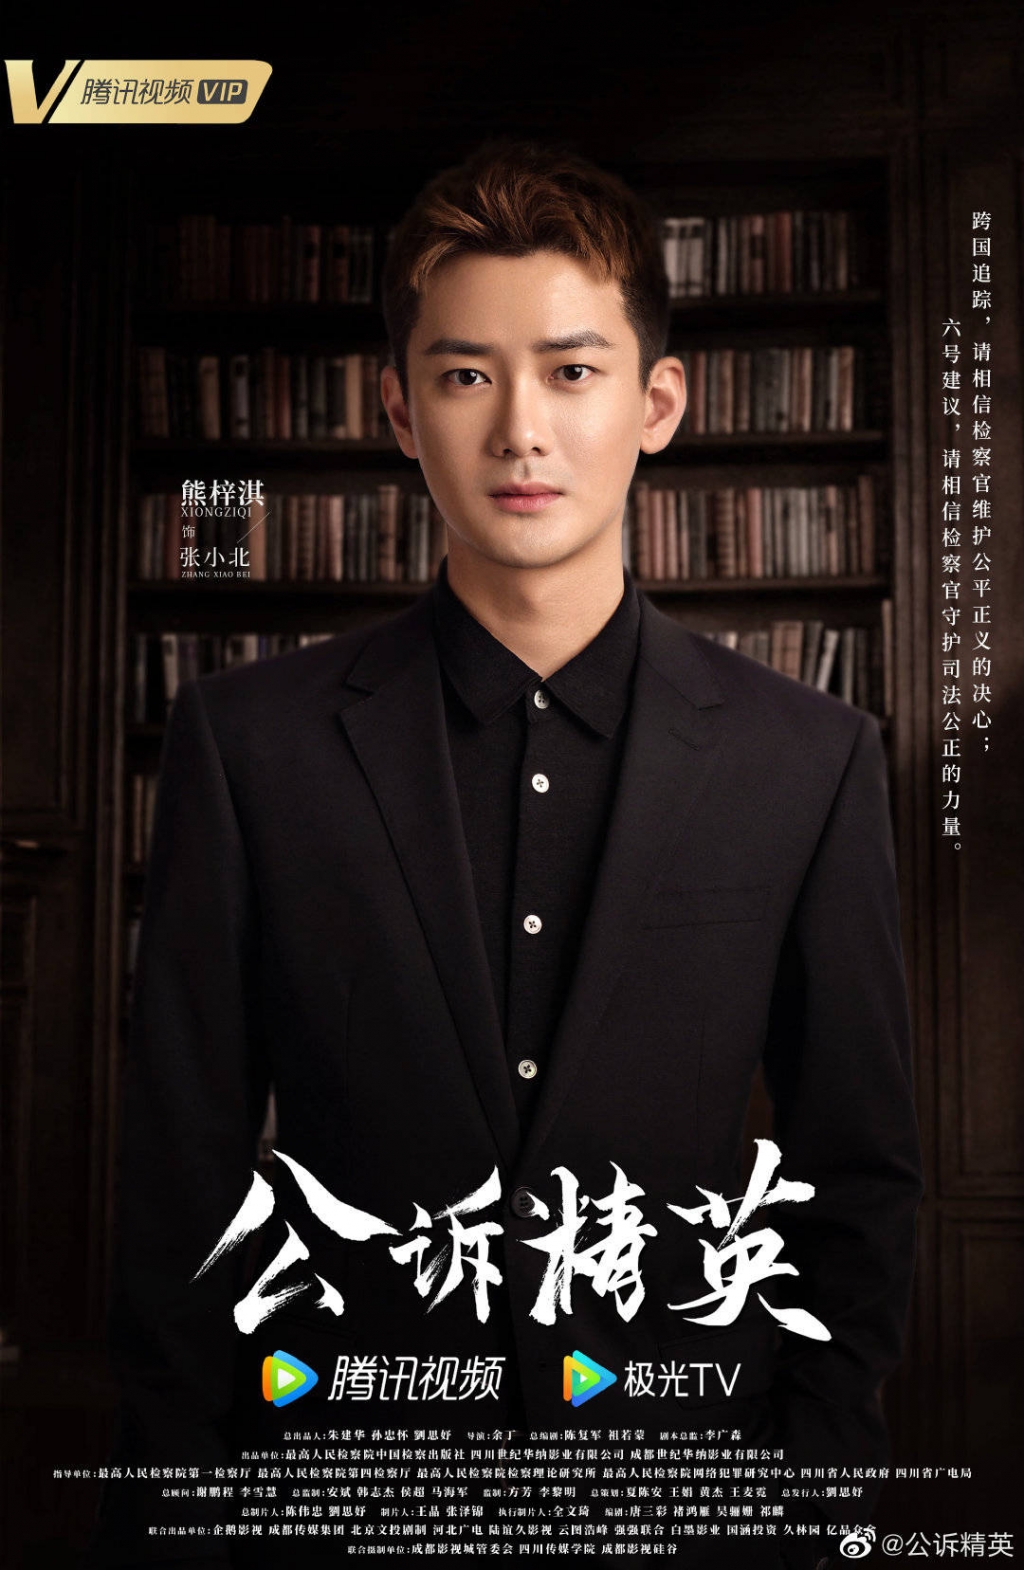 'Công tố tinh anh' tung poster chính thức giới thiệu nhân vật, Địch Lệ Nhiệt Ba khí chất ngời ngợi